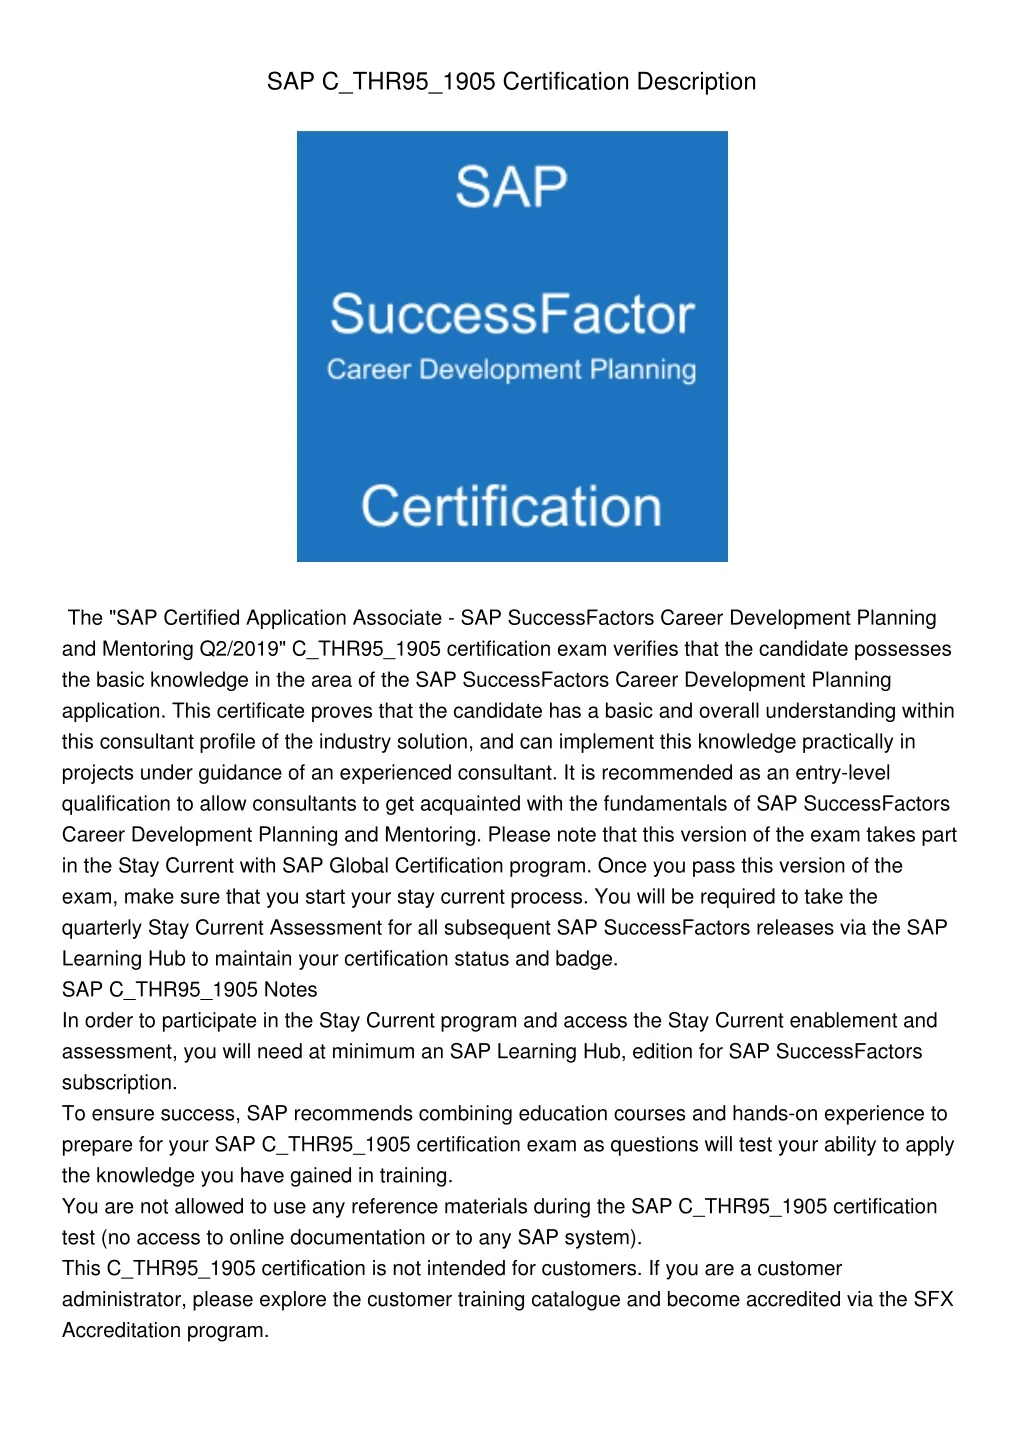 sap c thr95 1905 certification description